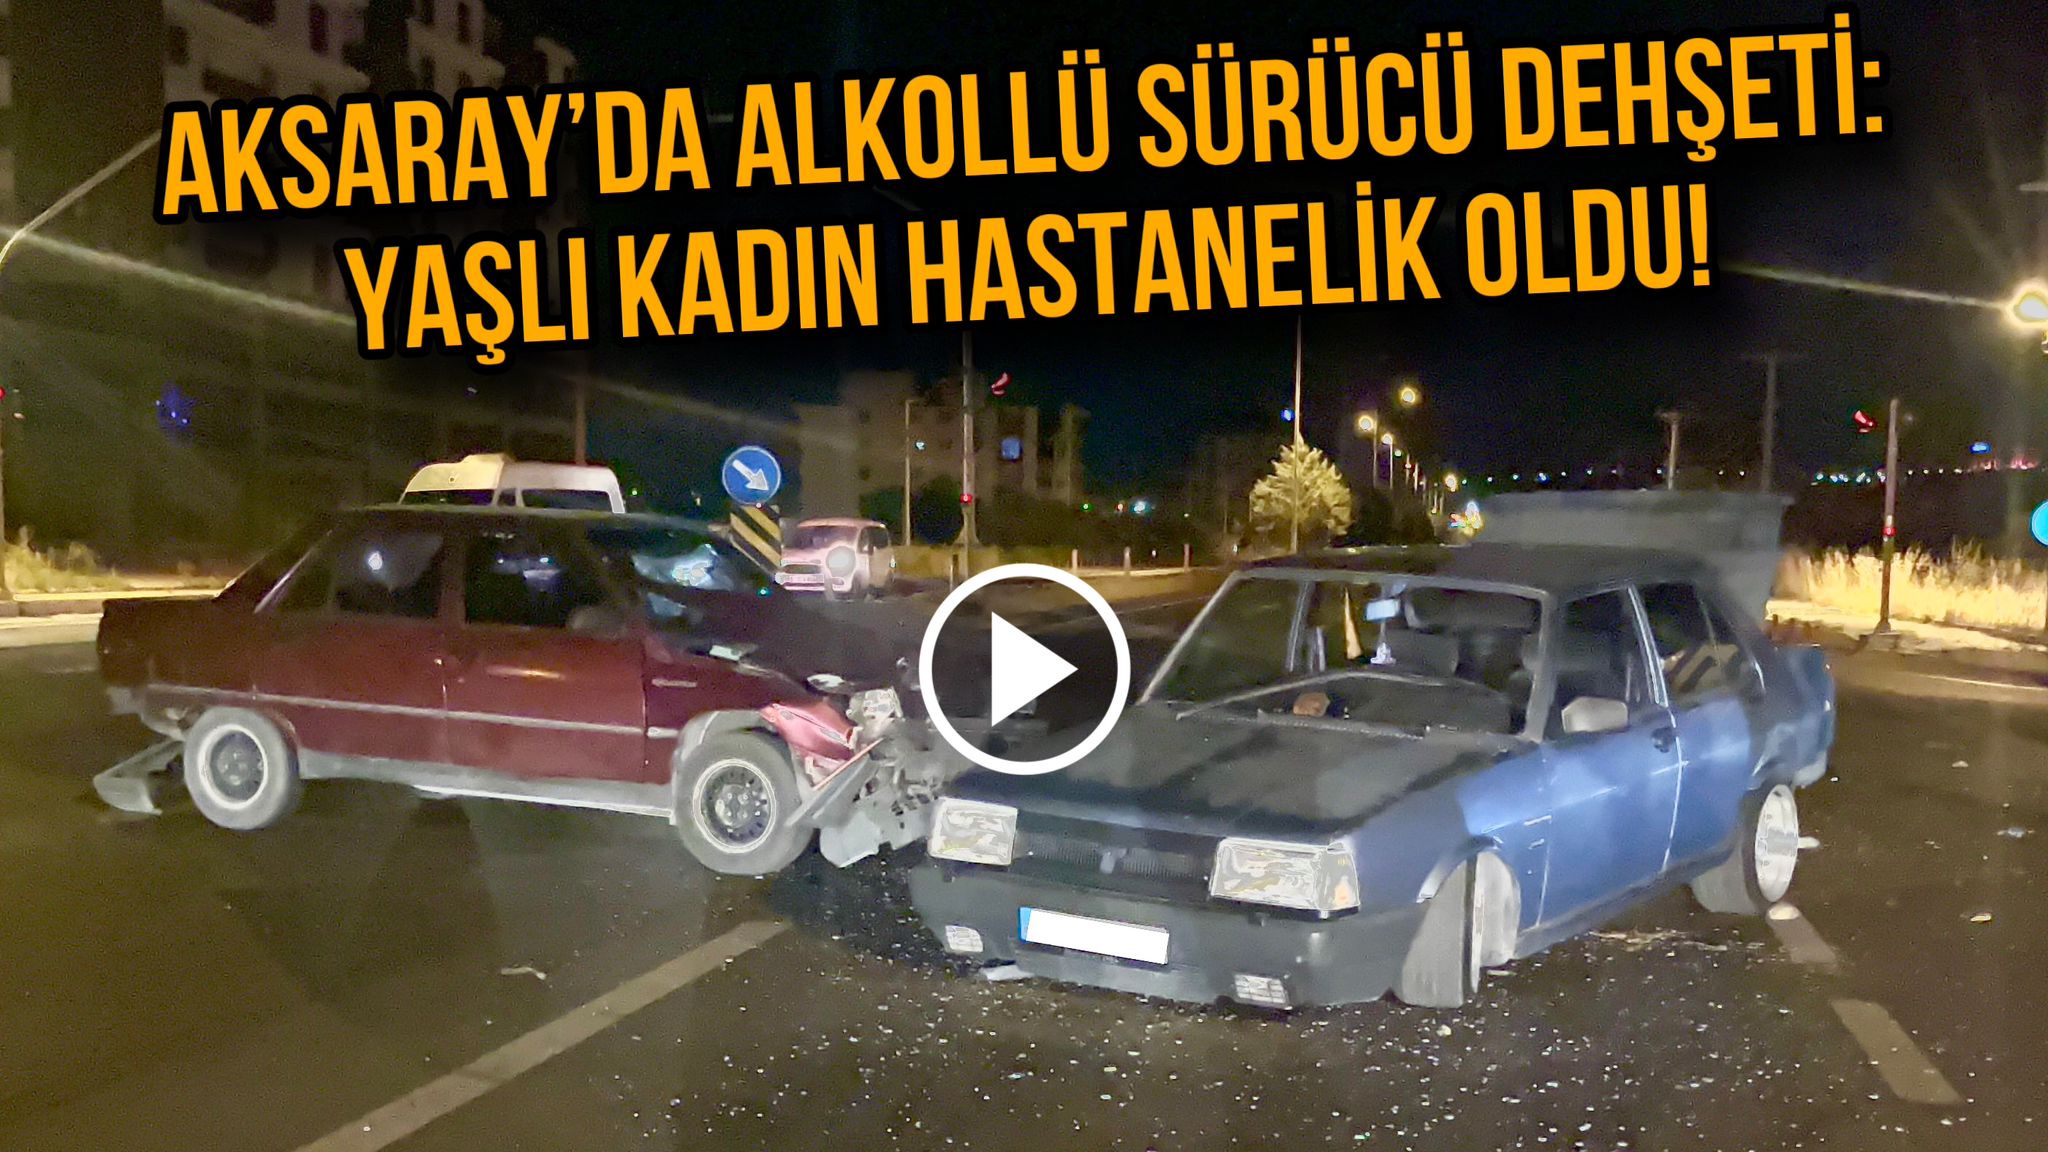 Aksaray’da Alkollü Sürücü Dehşeti: Yaşlı Kadın Hastanelik oldu!